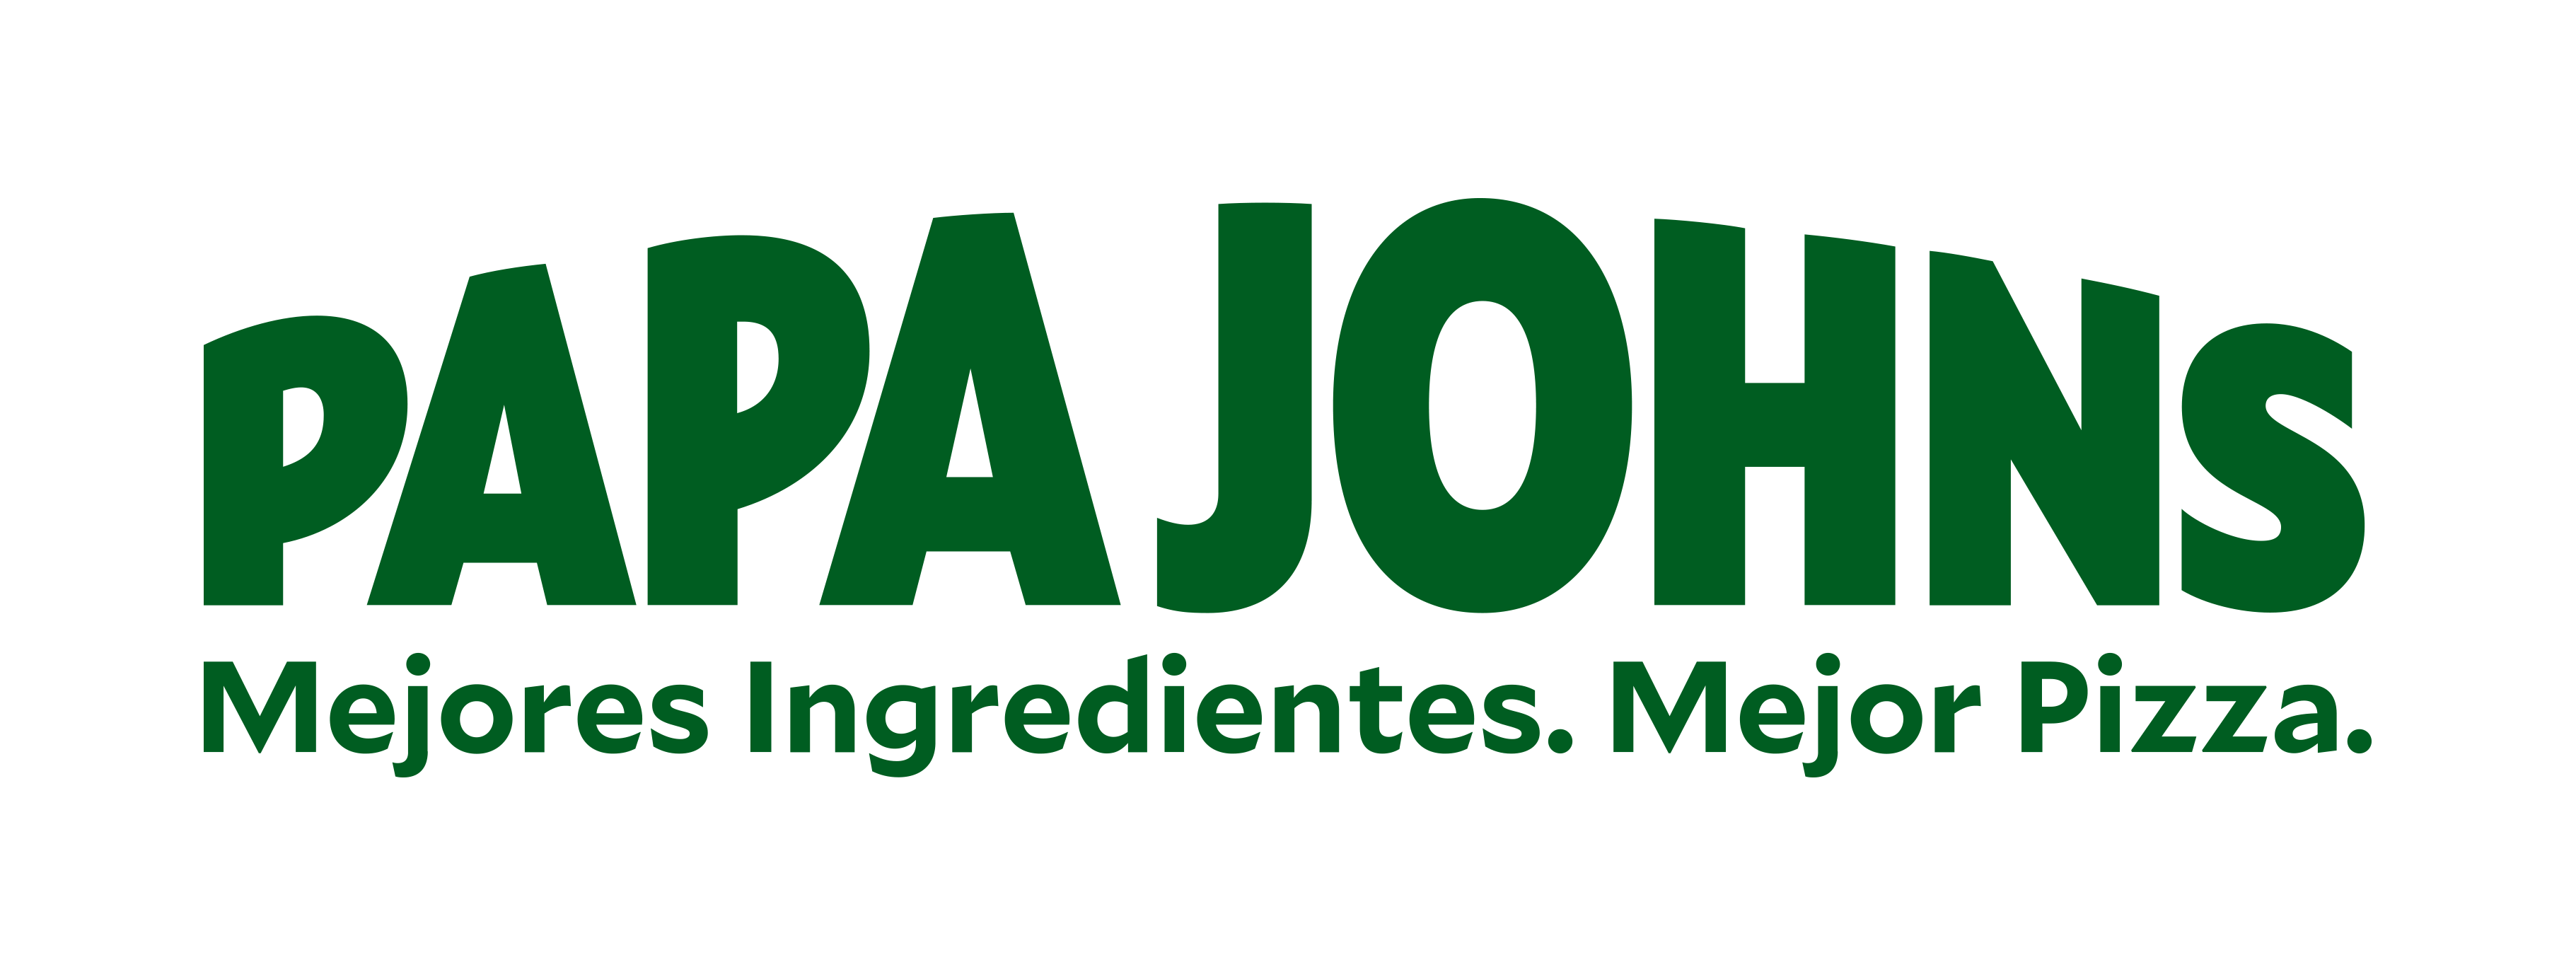 Logo Papa Johns patrocinador